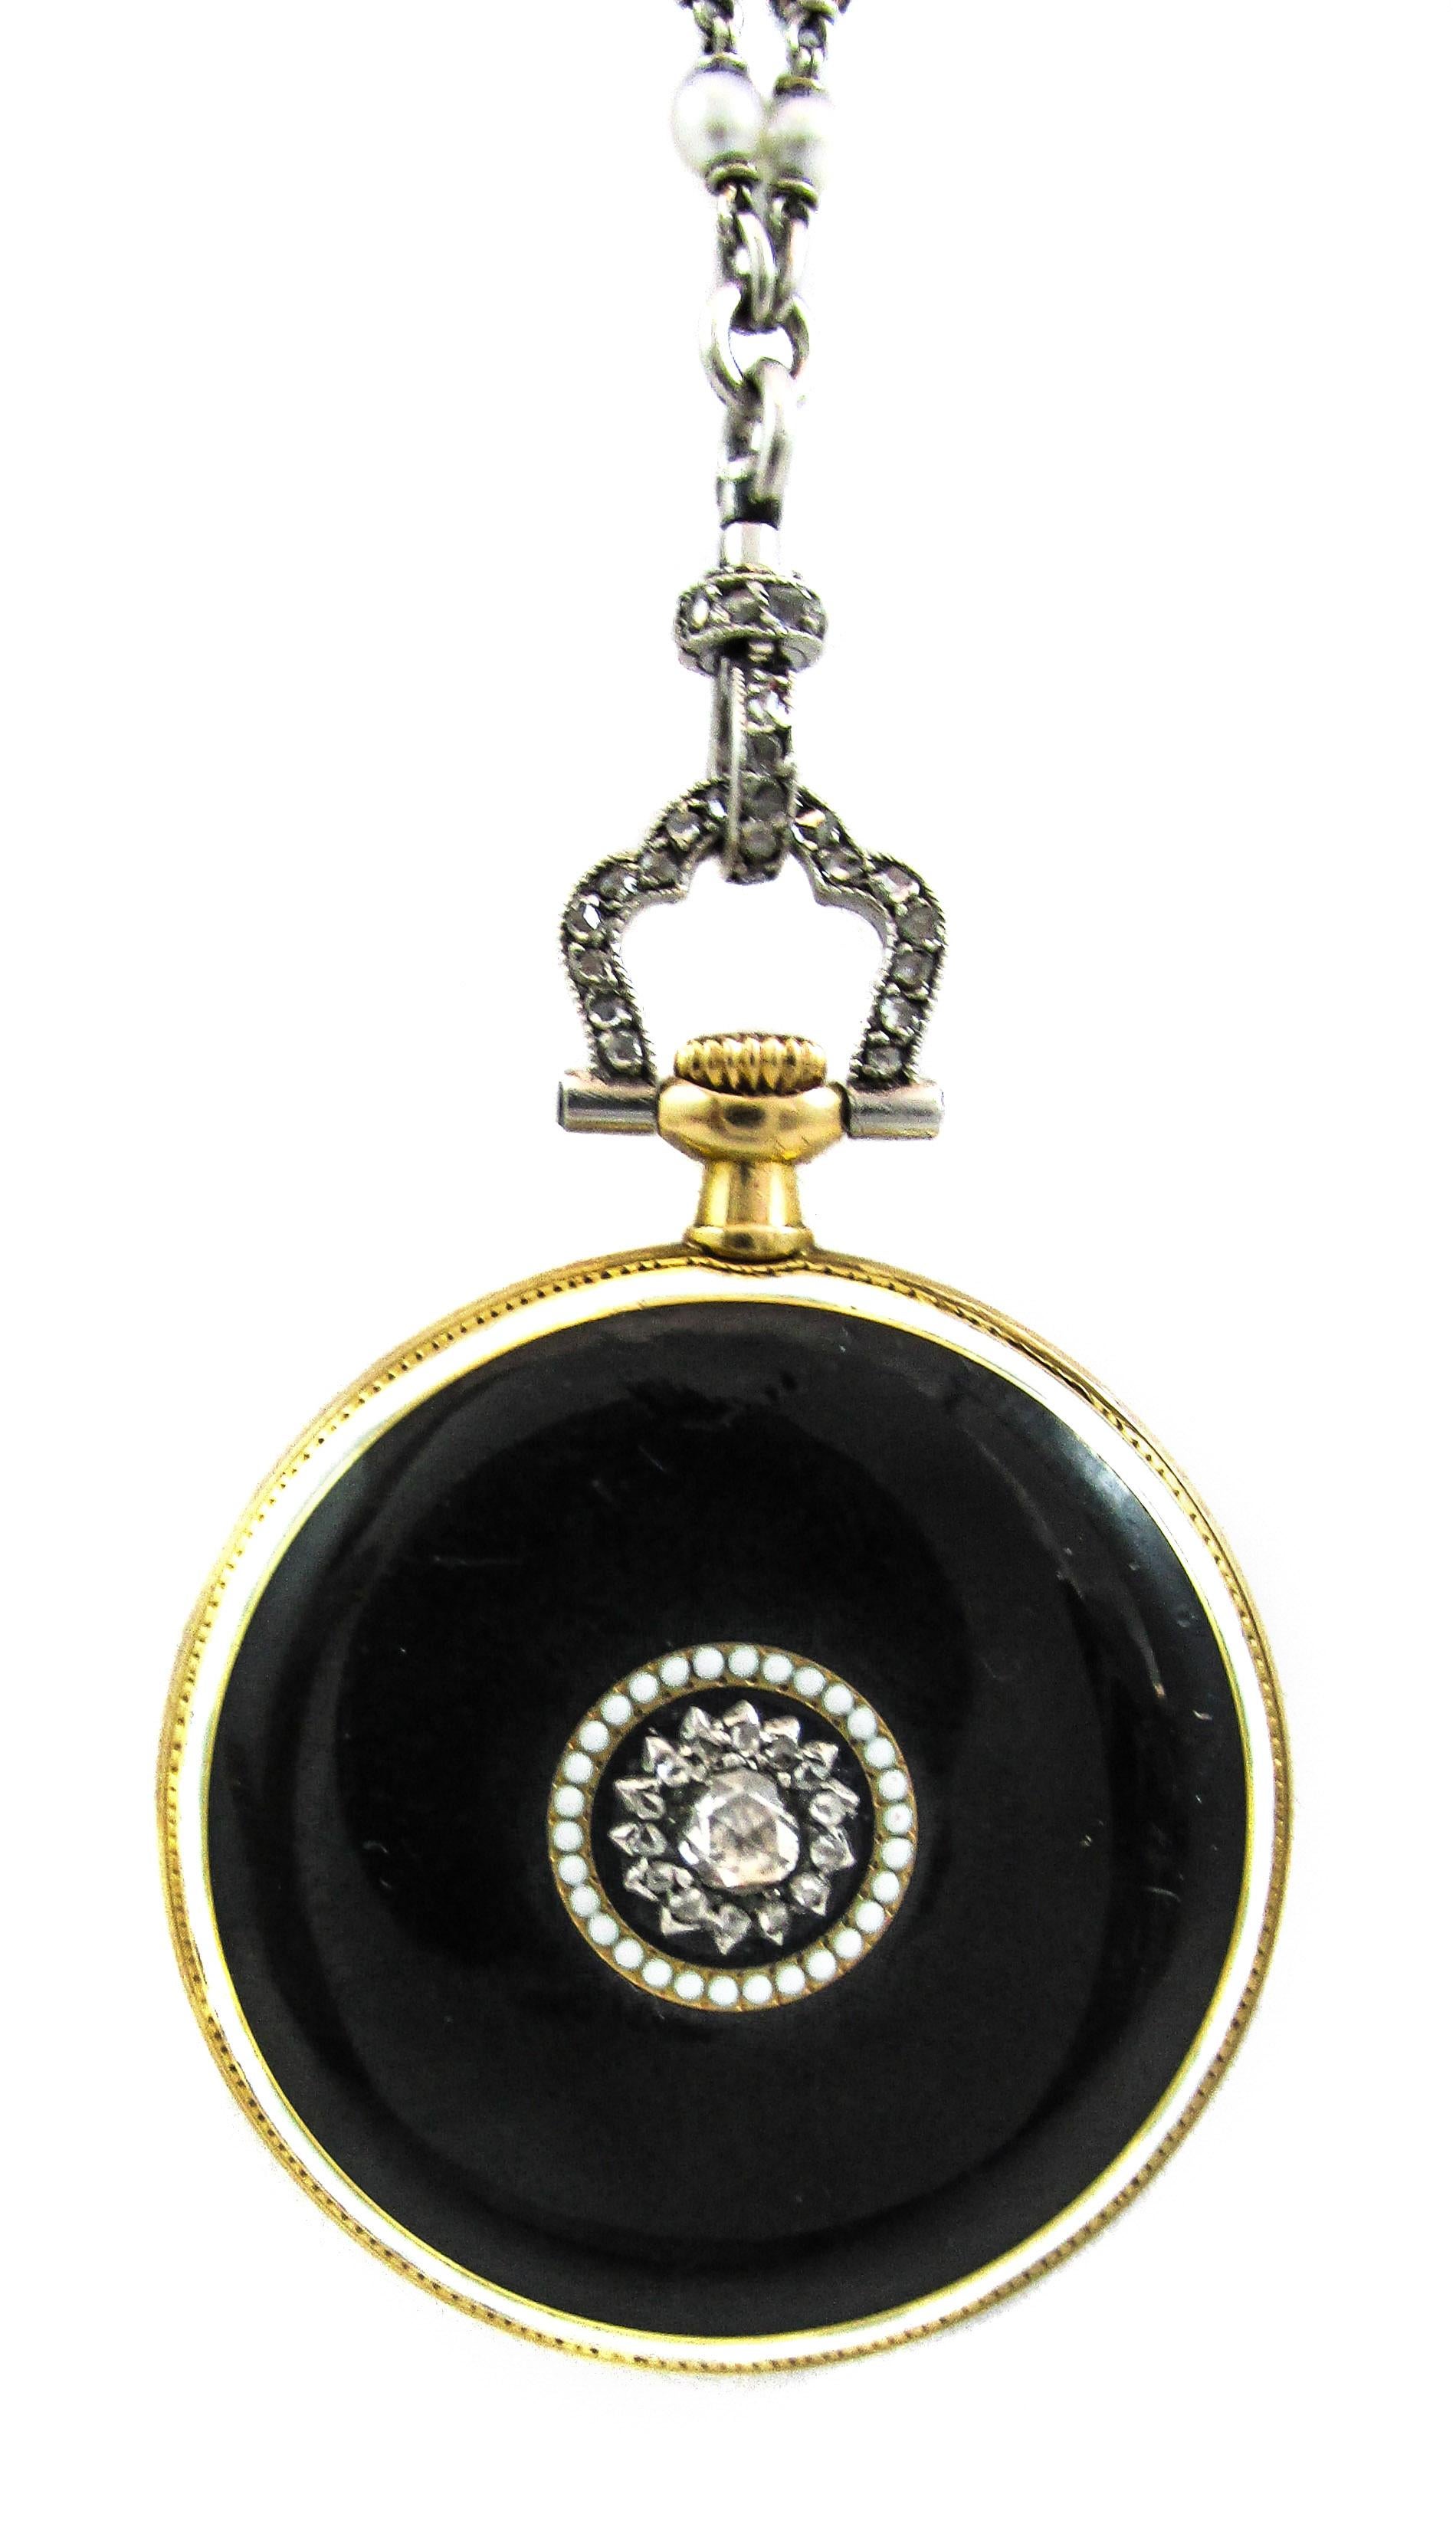 Women's or Men's Cartier Platinum Yellow Gold Diamond Black Enamel Pendant Watch Necklace For Sale